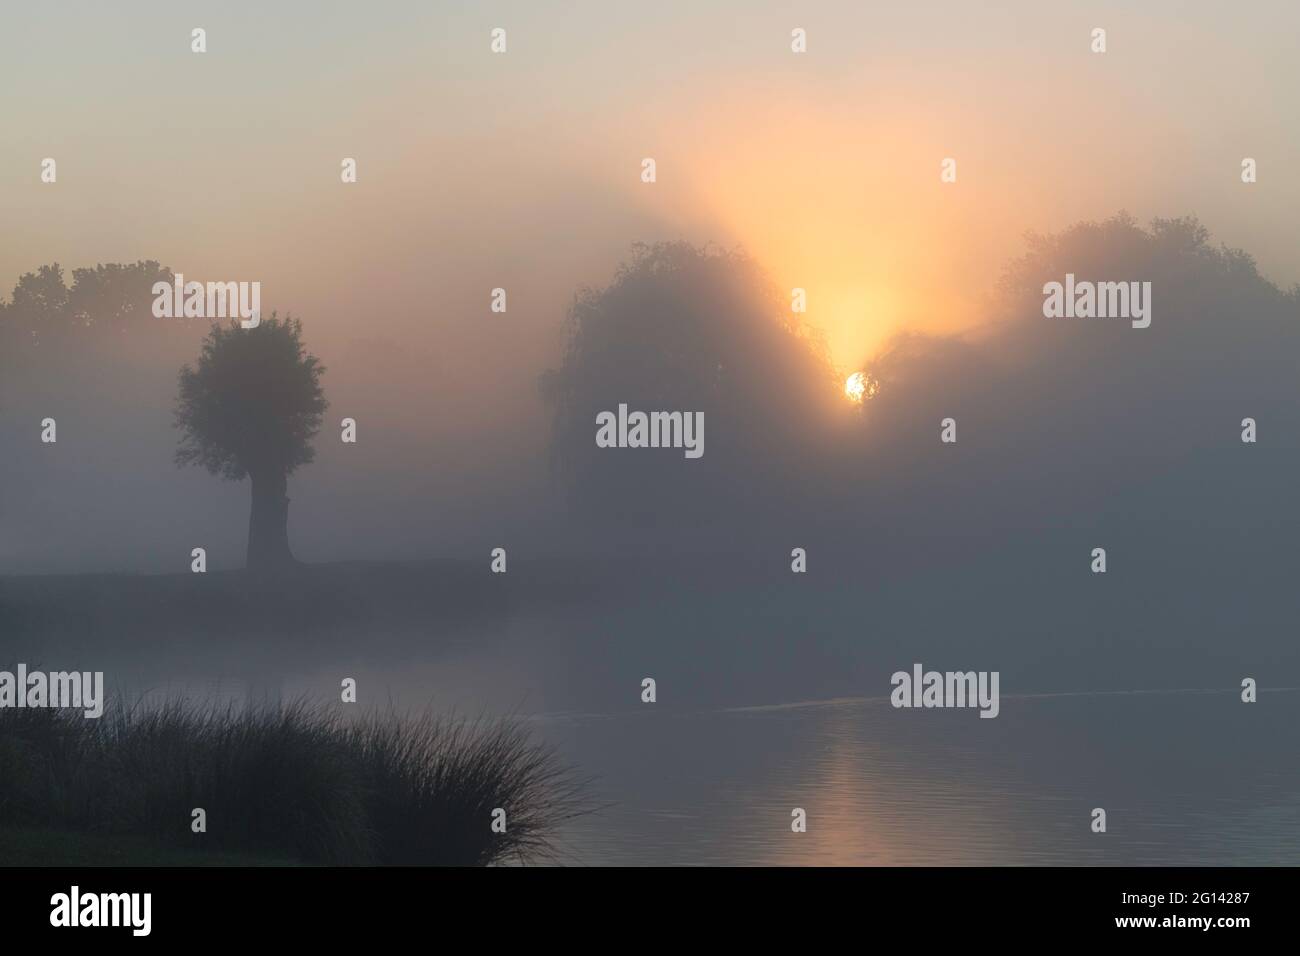 Le soleil se lève sur les arbres un matin très brumeux près d'un étang tranquille Banque D'Images